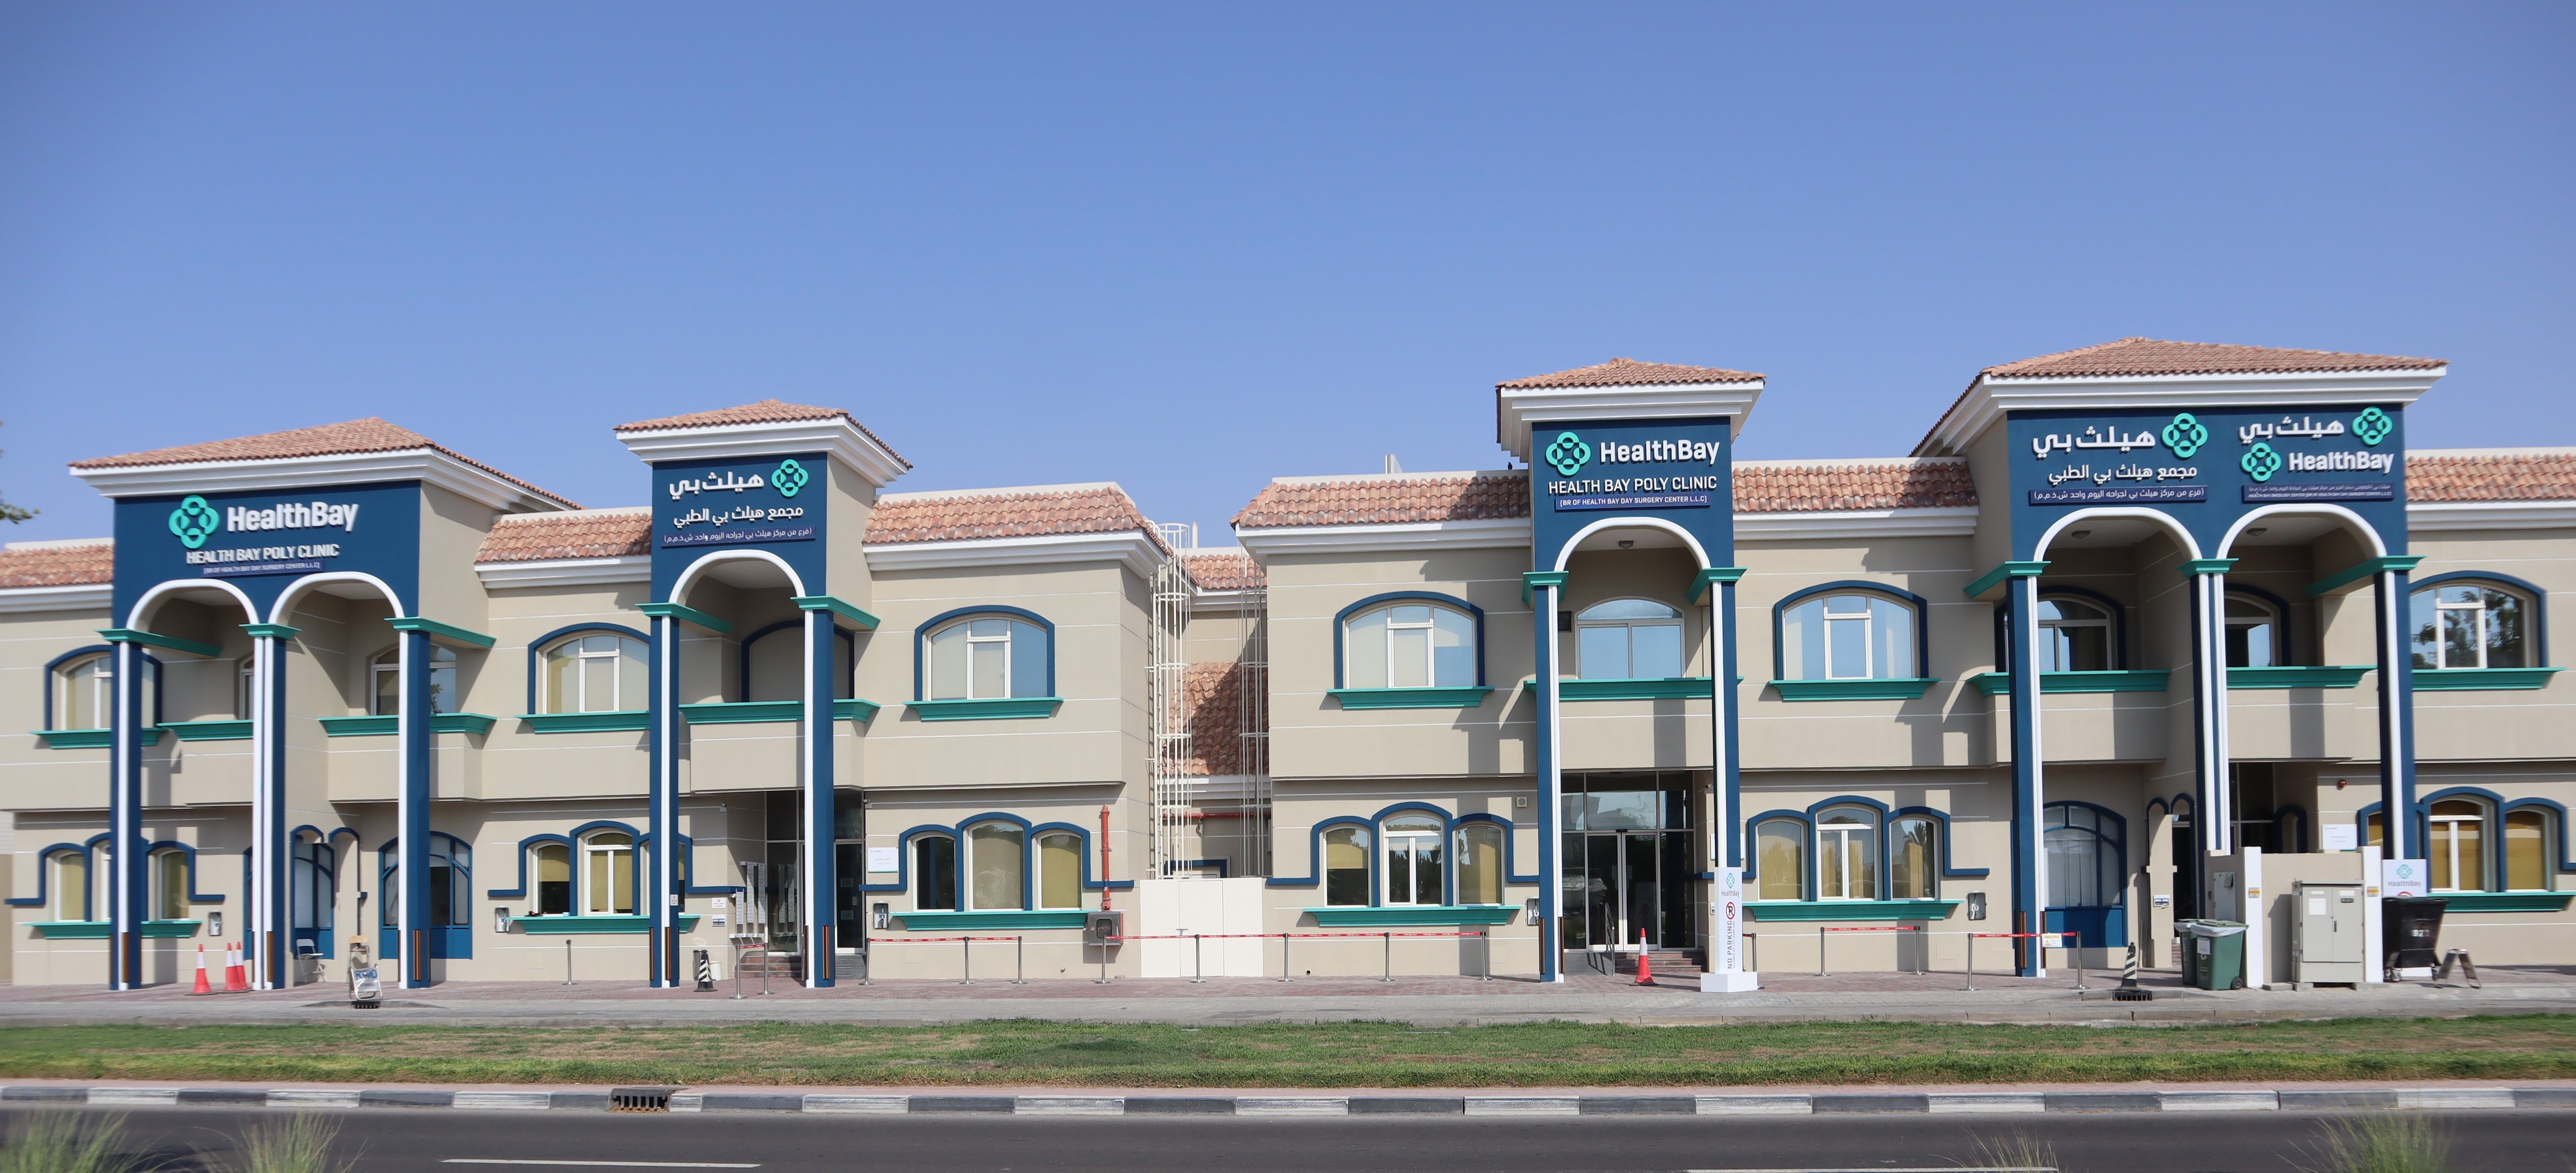 Healthbay in Verve Villas #1-6, Al Wasl Road, Jumeirah